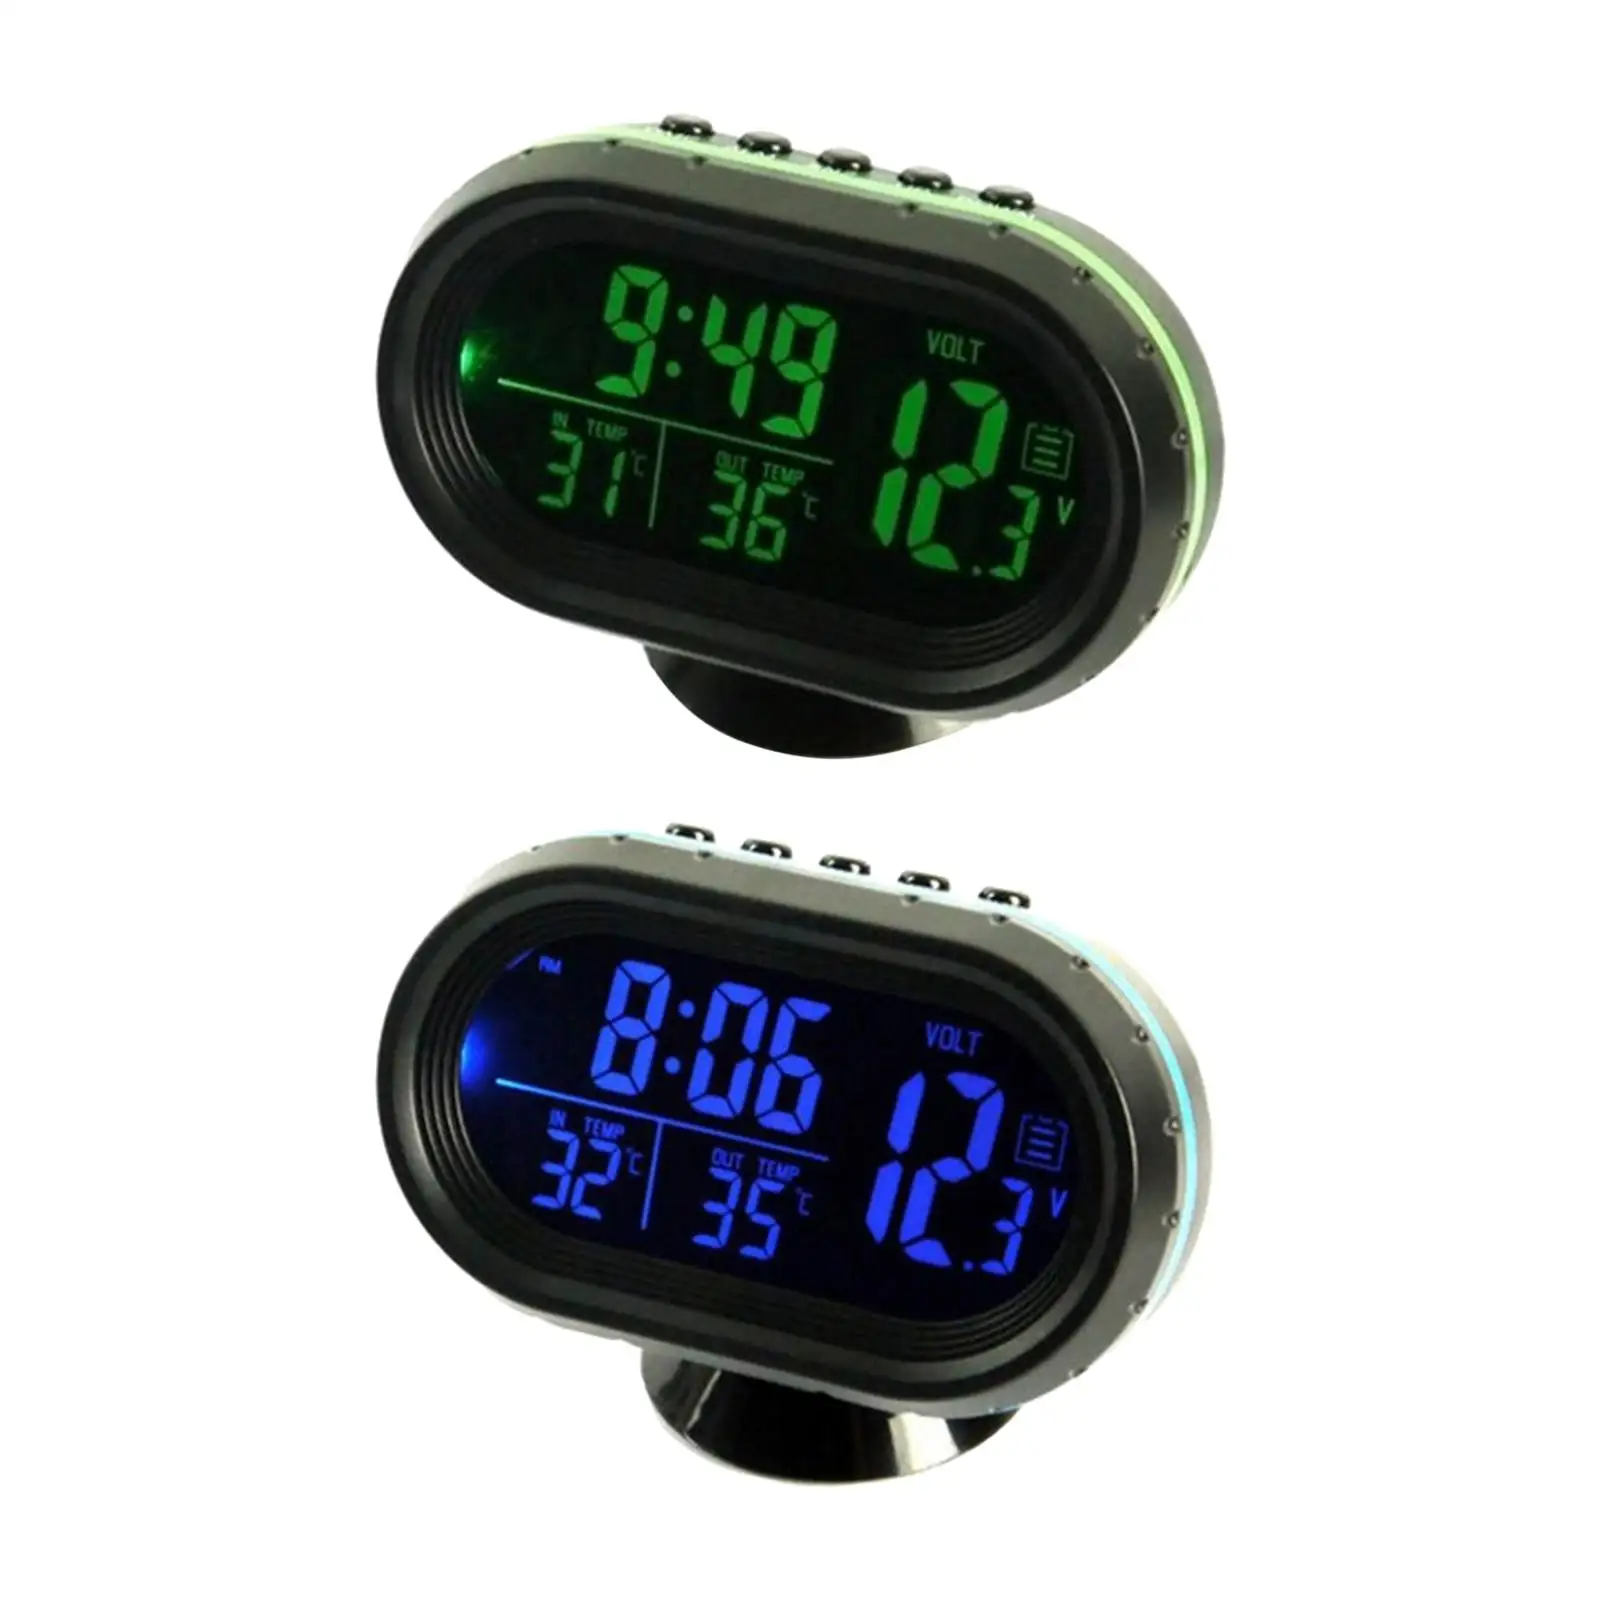 Car Digital Thermometer Clock Voltmeter Battery Meter Dual Temperature Gauge Alarm Monitor